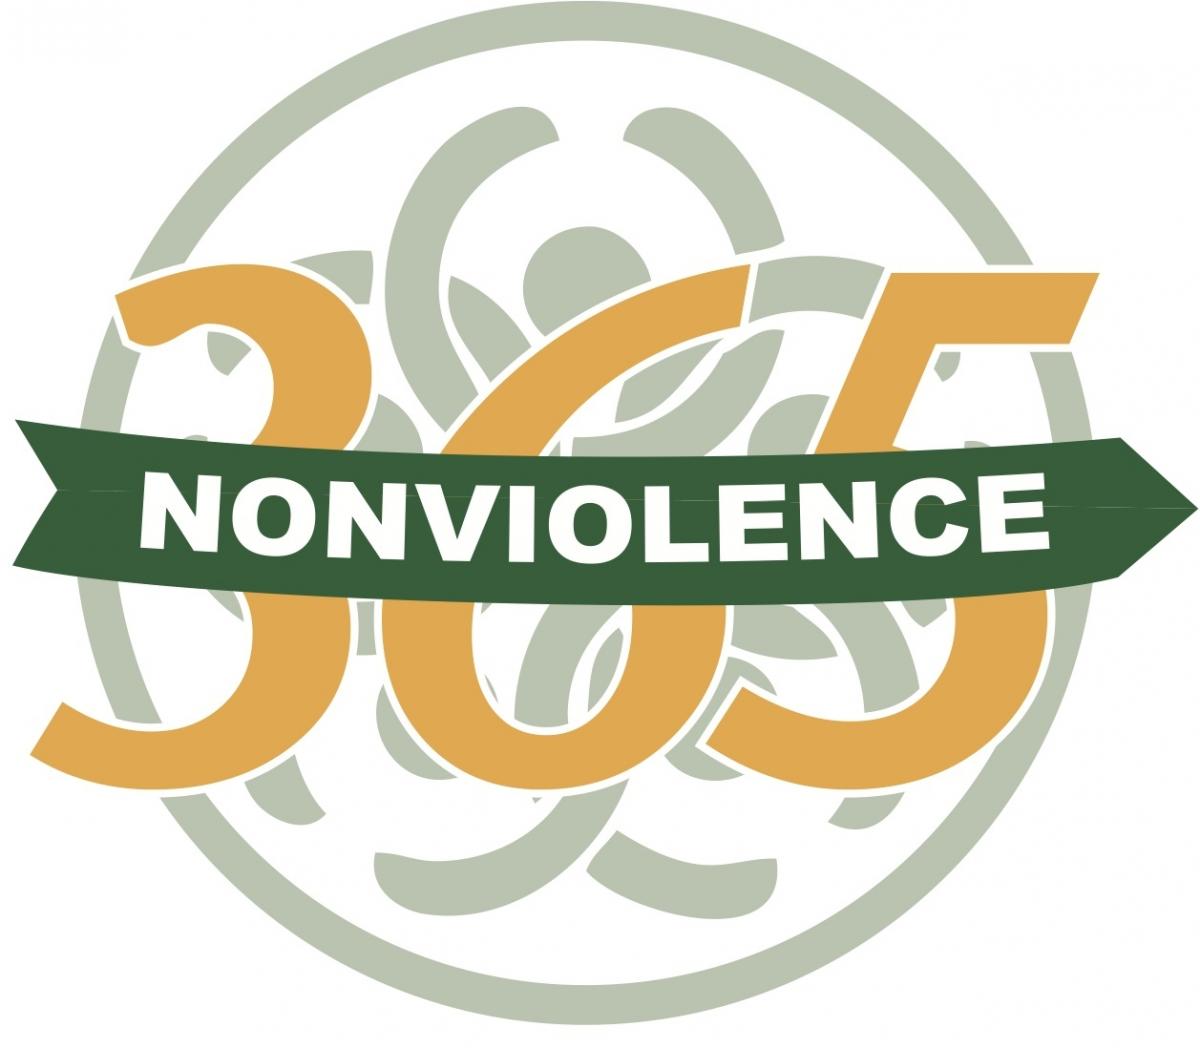 Nonviolence 365